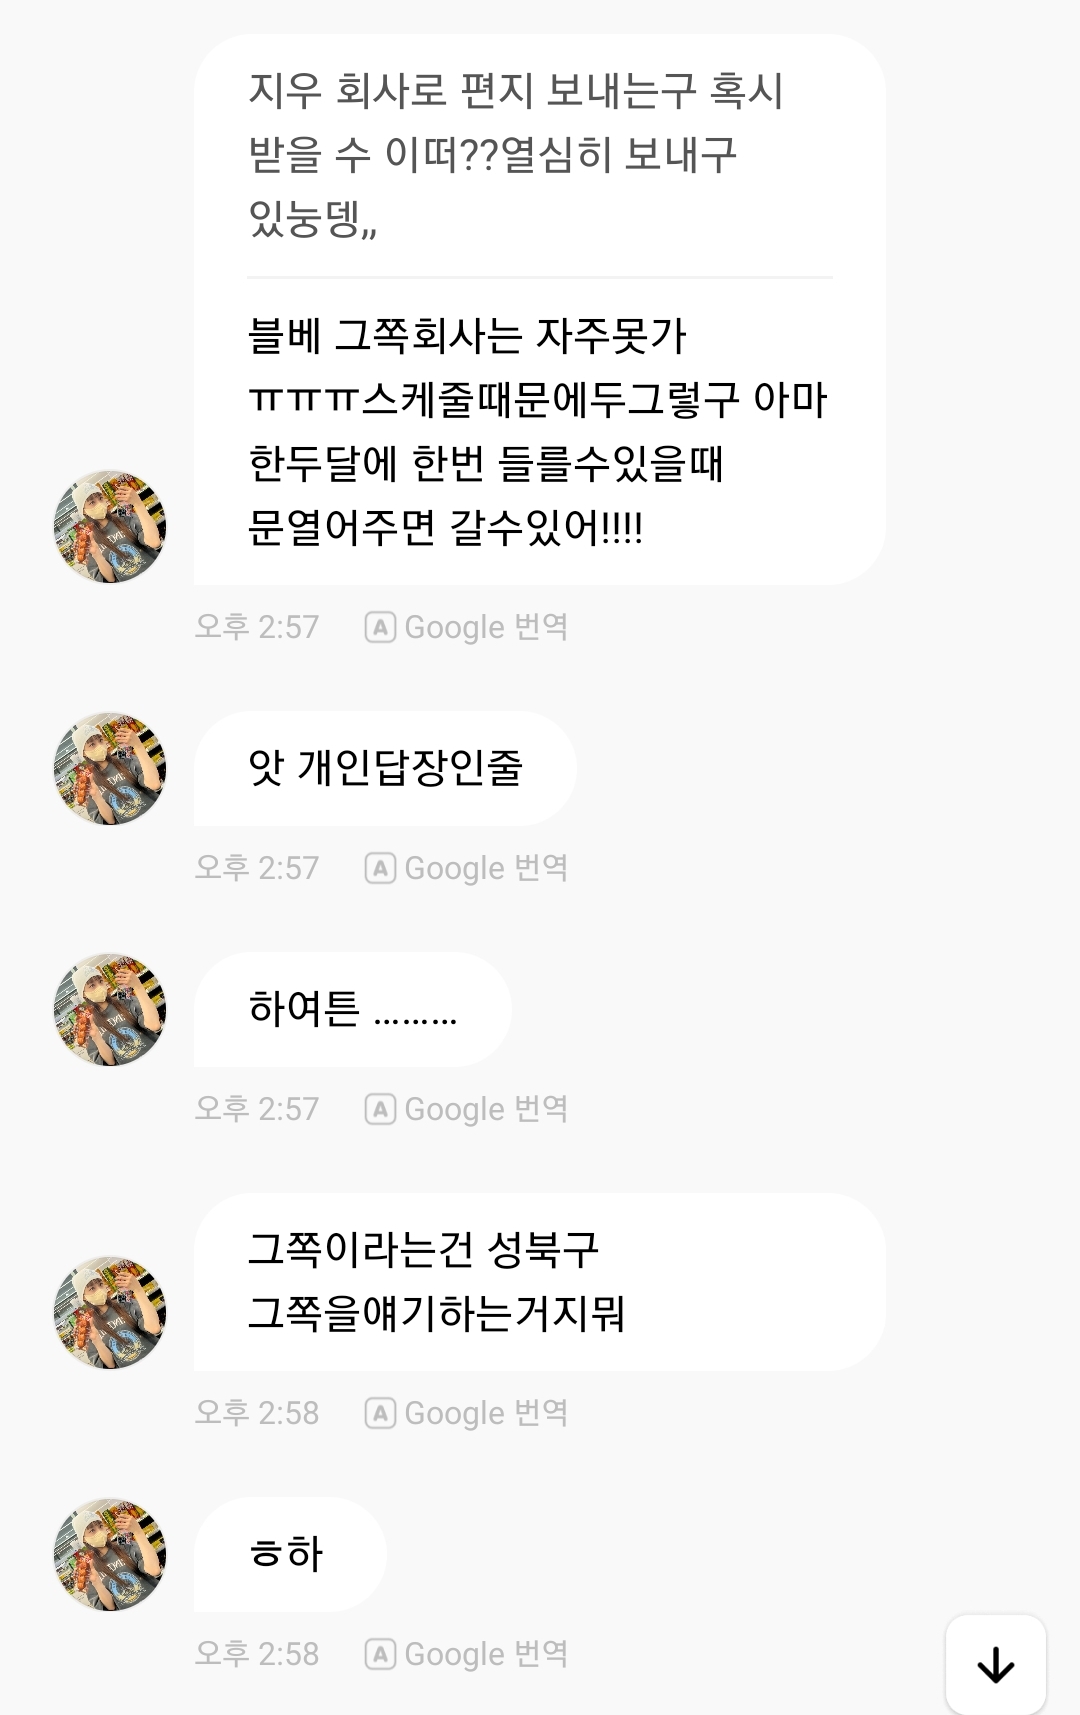 [정리글] 블록베리 정산 및 멤버 츄 활동 불참 관한 정리 (본인 팬인증) | 인스티즈